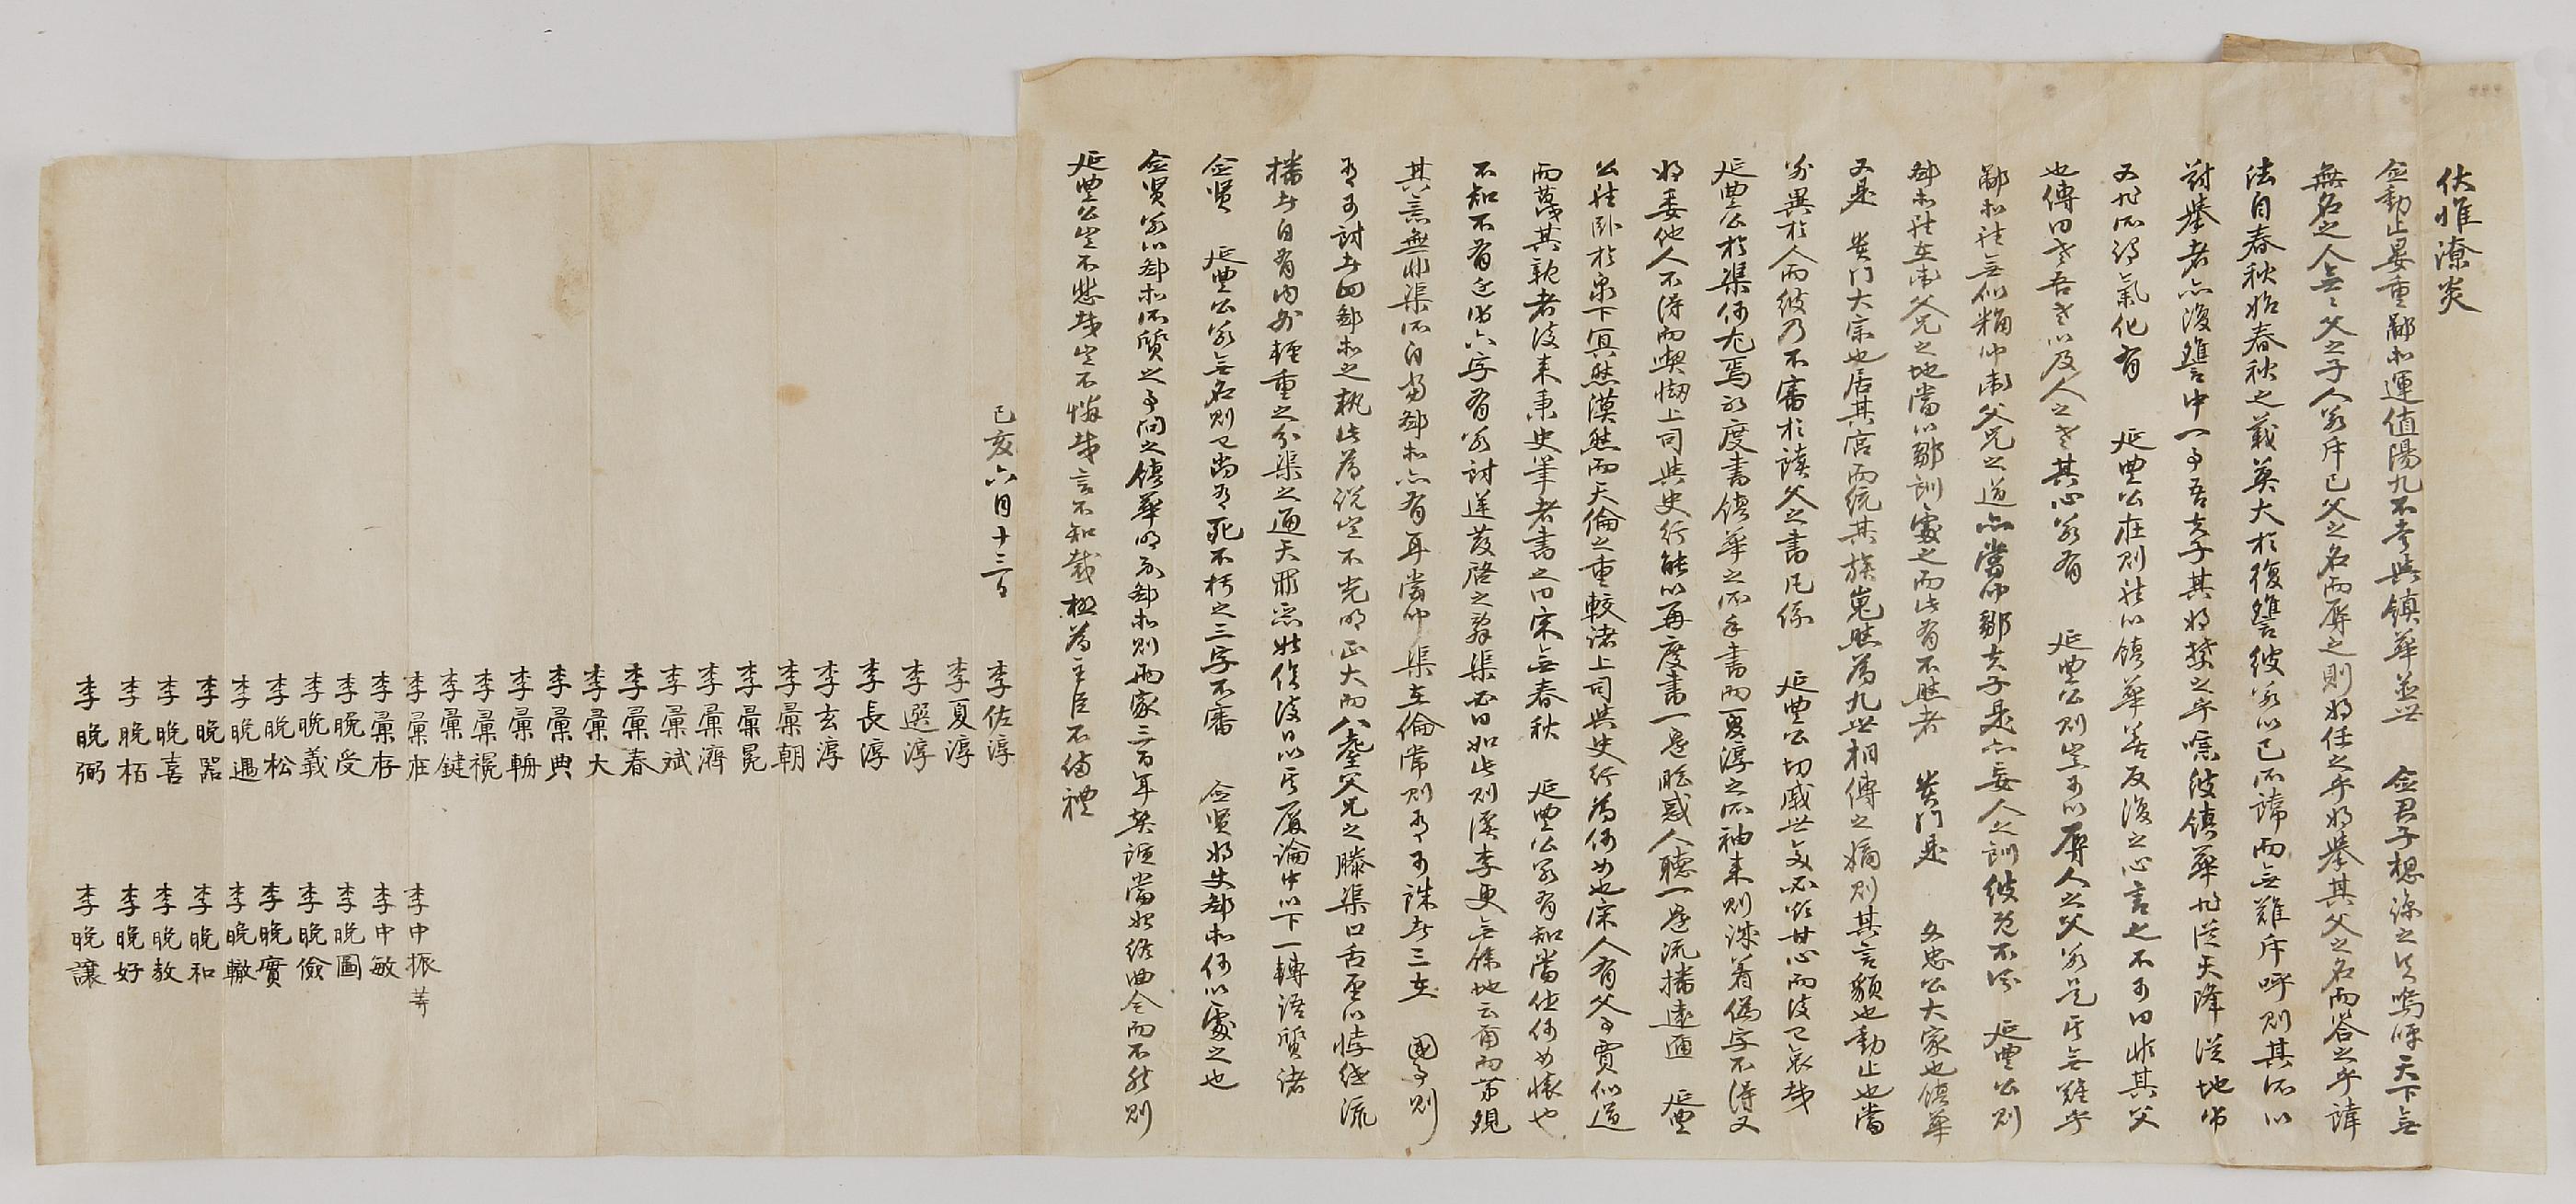 이좌순(李佐淳)등이 1839년에 연서하여 금계(金溪) 김씨(金氏) 문중에 보낸 편지